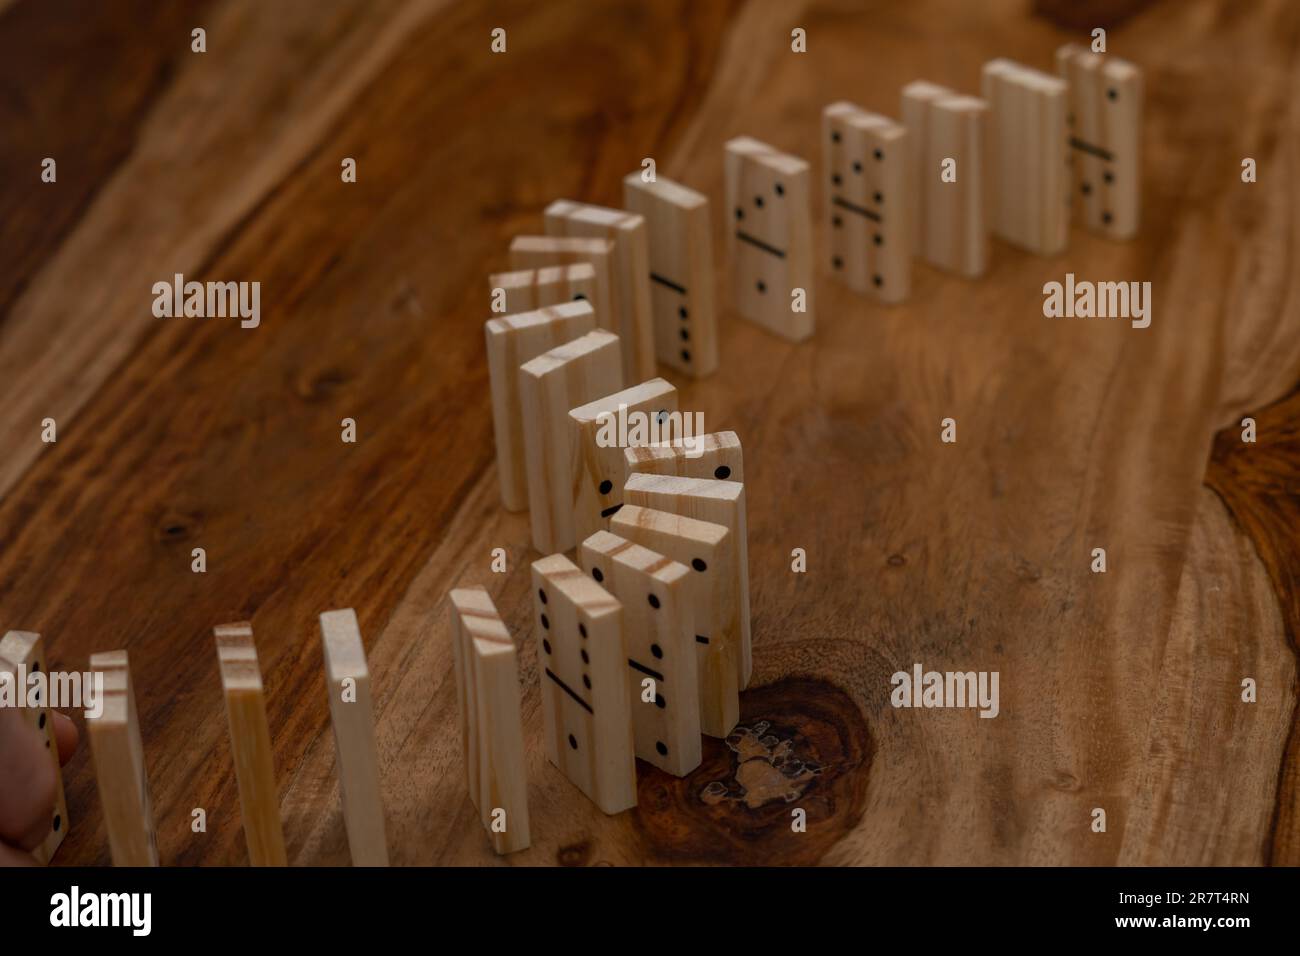 Hölzerne Dominosteine in einer Reihe auf einem Holztisch Stockfoto